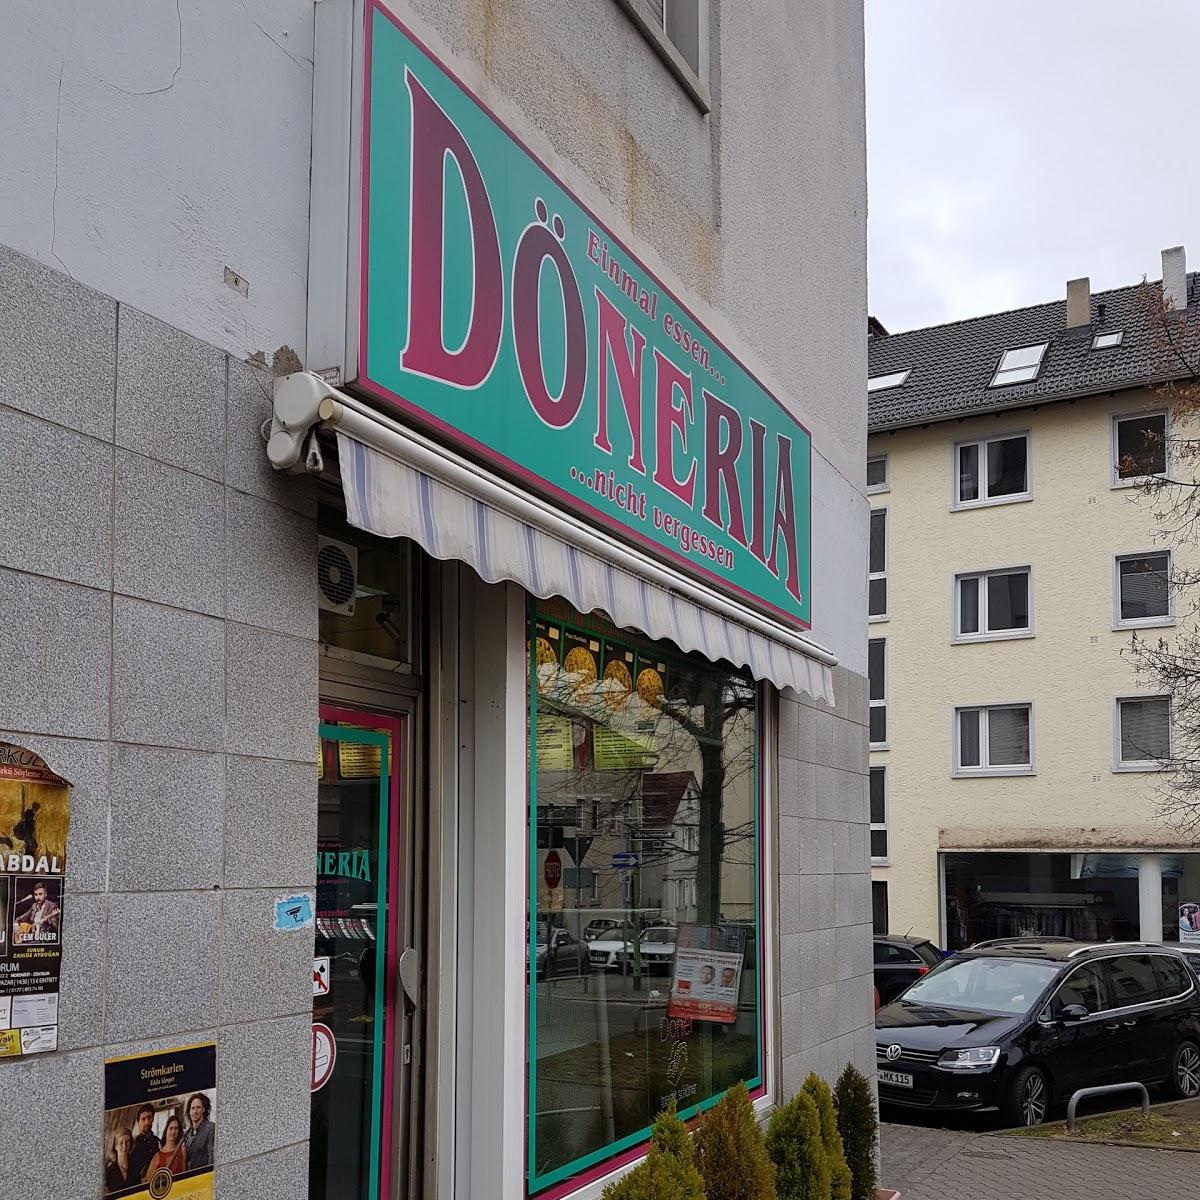 Restaurant "Döneria" in Frankfurt am Main